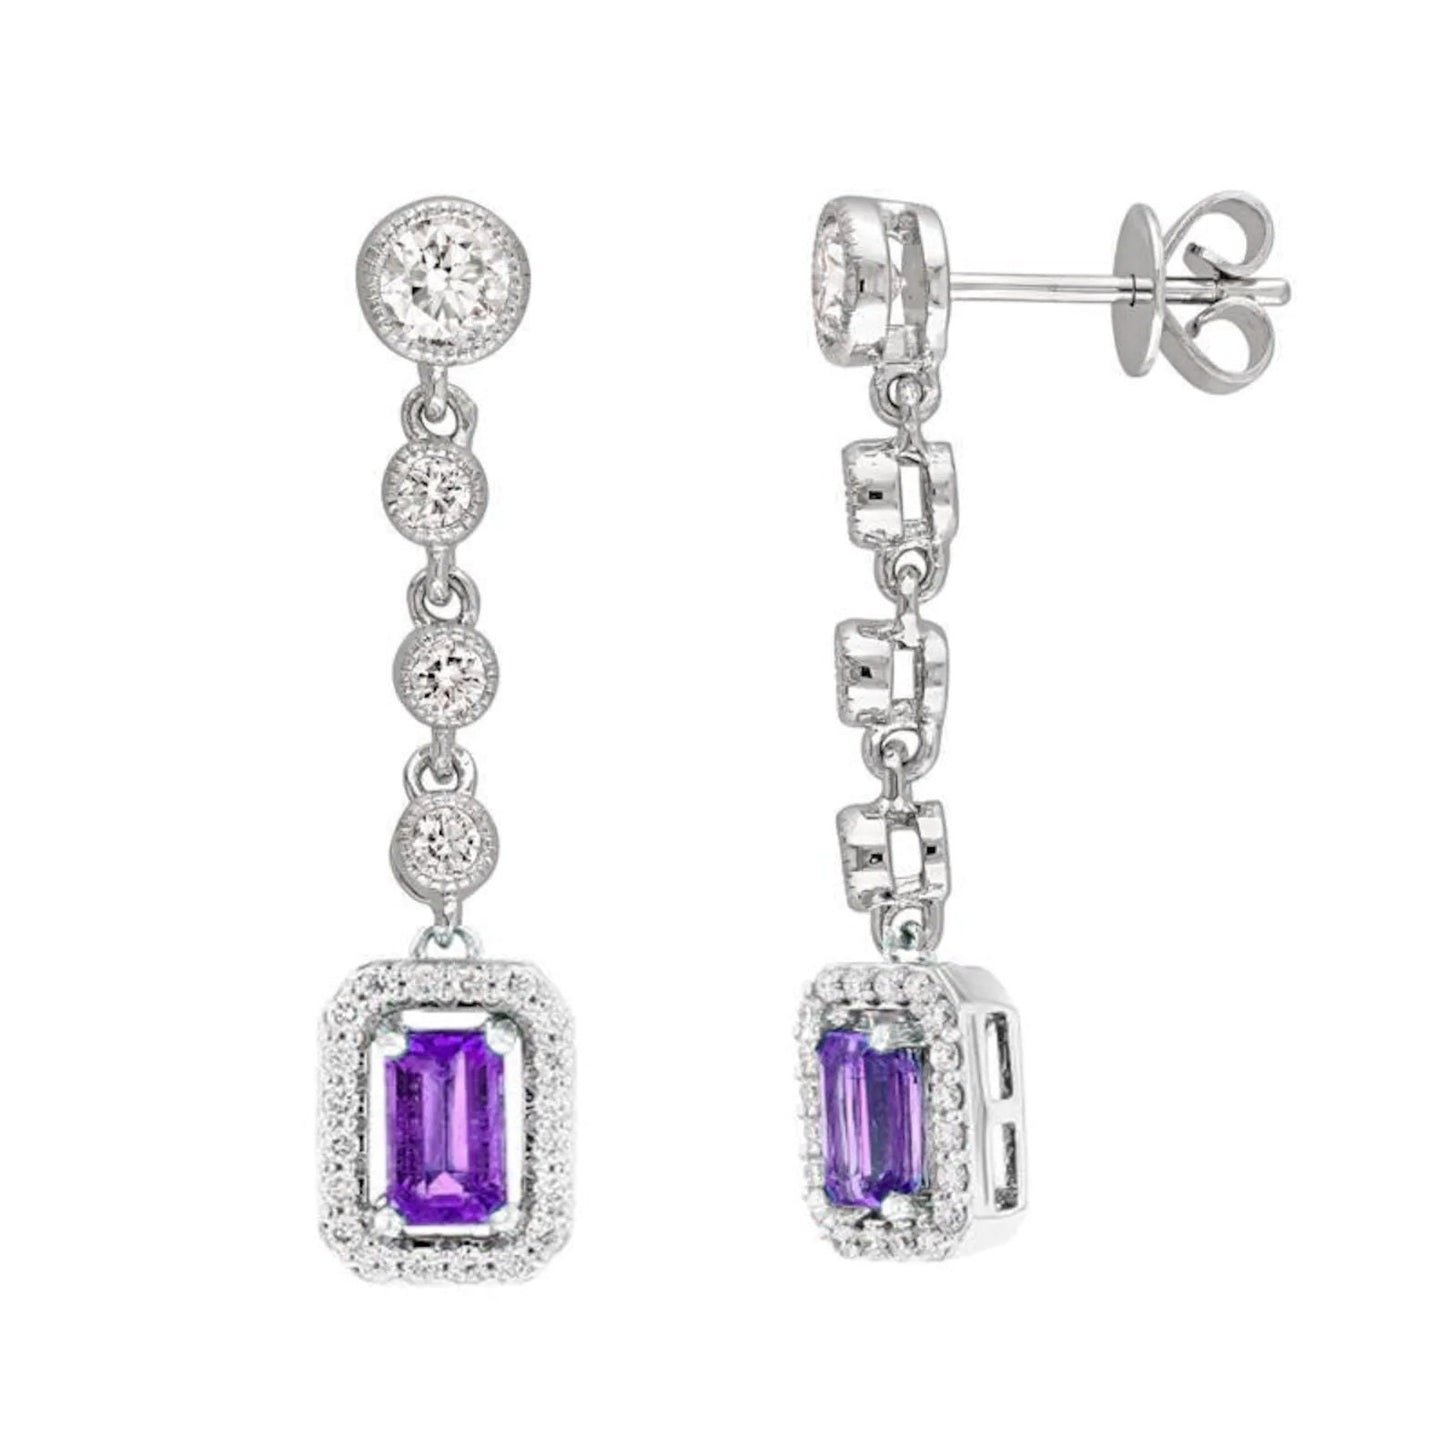 RUBY DANGLE EARRINGS, Ruby and Diamond Drop Earrings, Gemstone Dangle Women's Earrings, Sterling Silver Dangle Earrings, Mother's day Gift